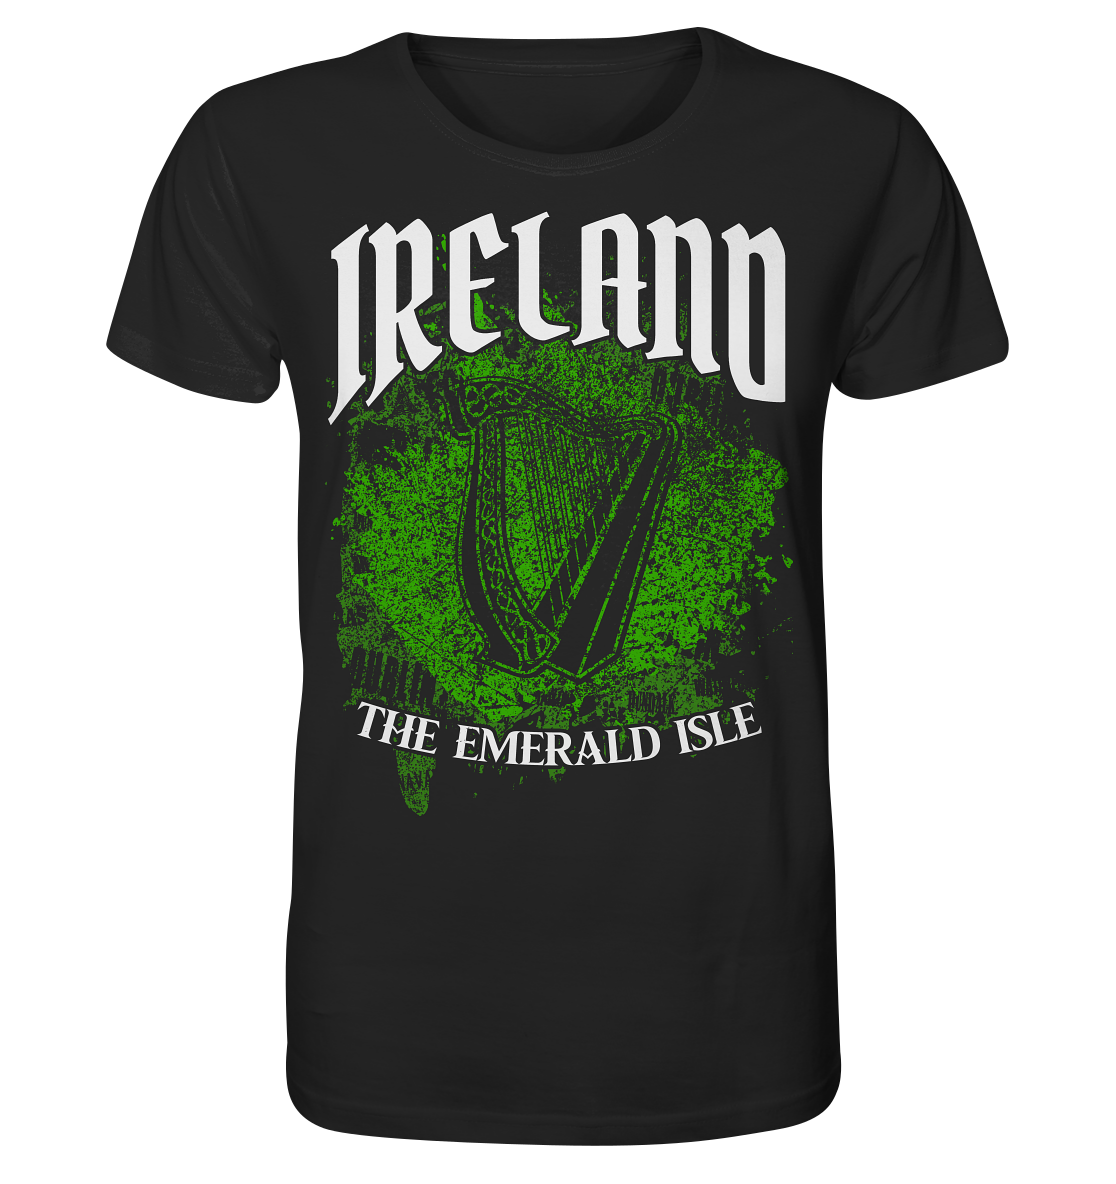 Ireland "The Emerald Isle / Splatter" - Organic Shirt